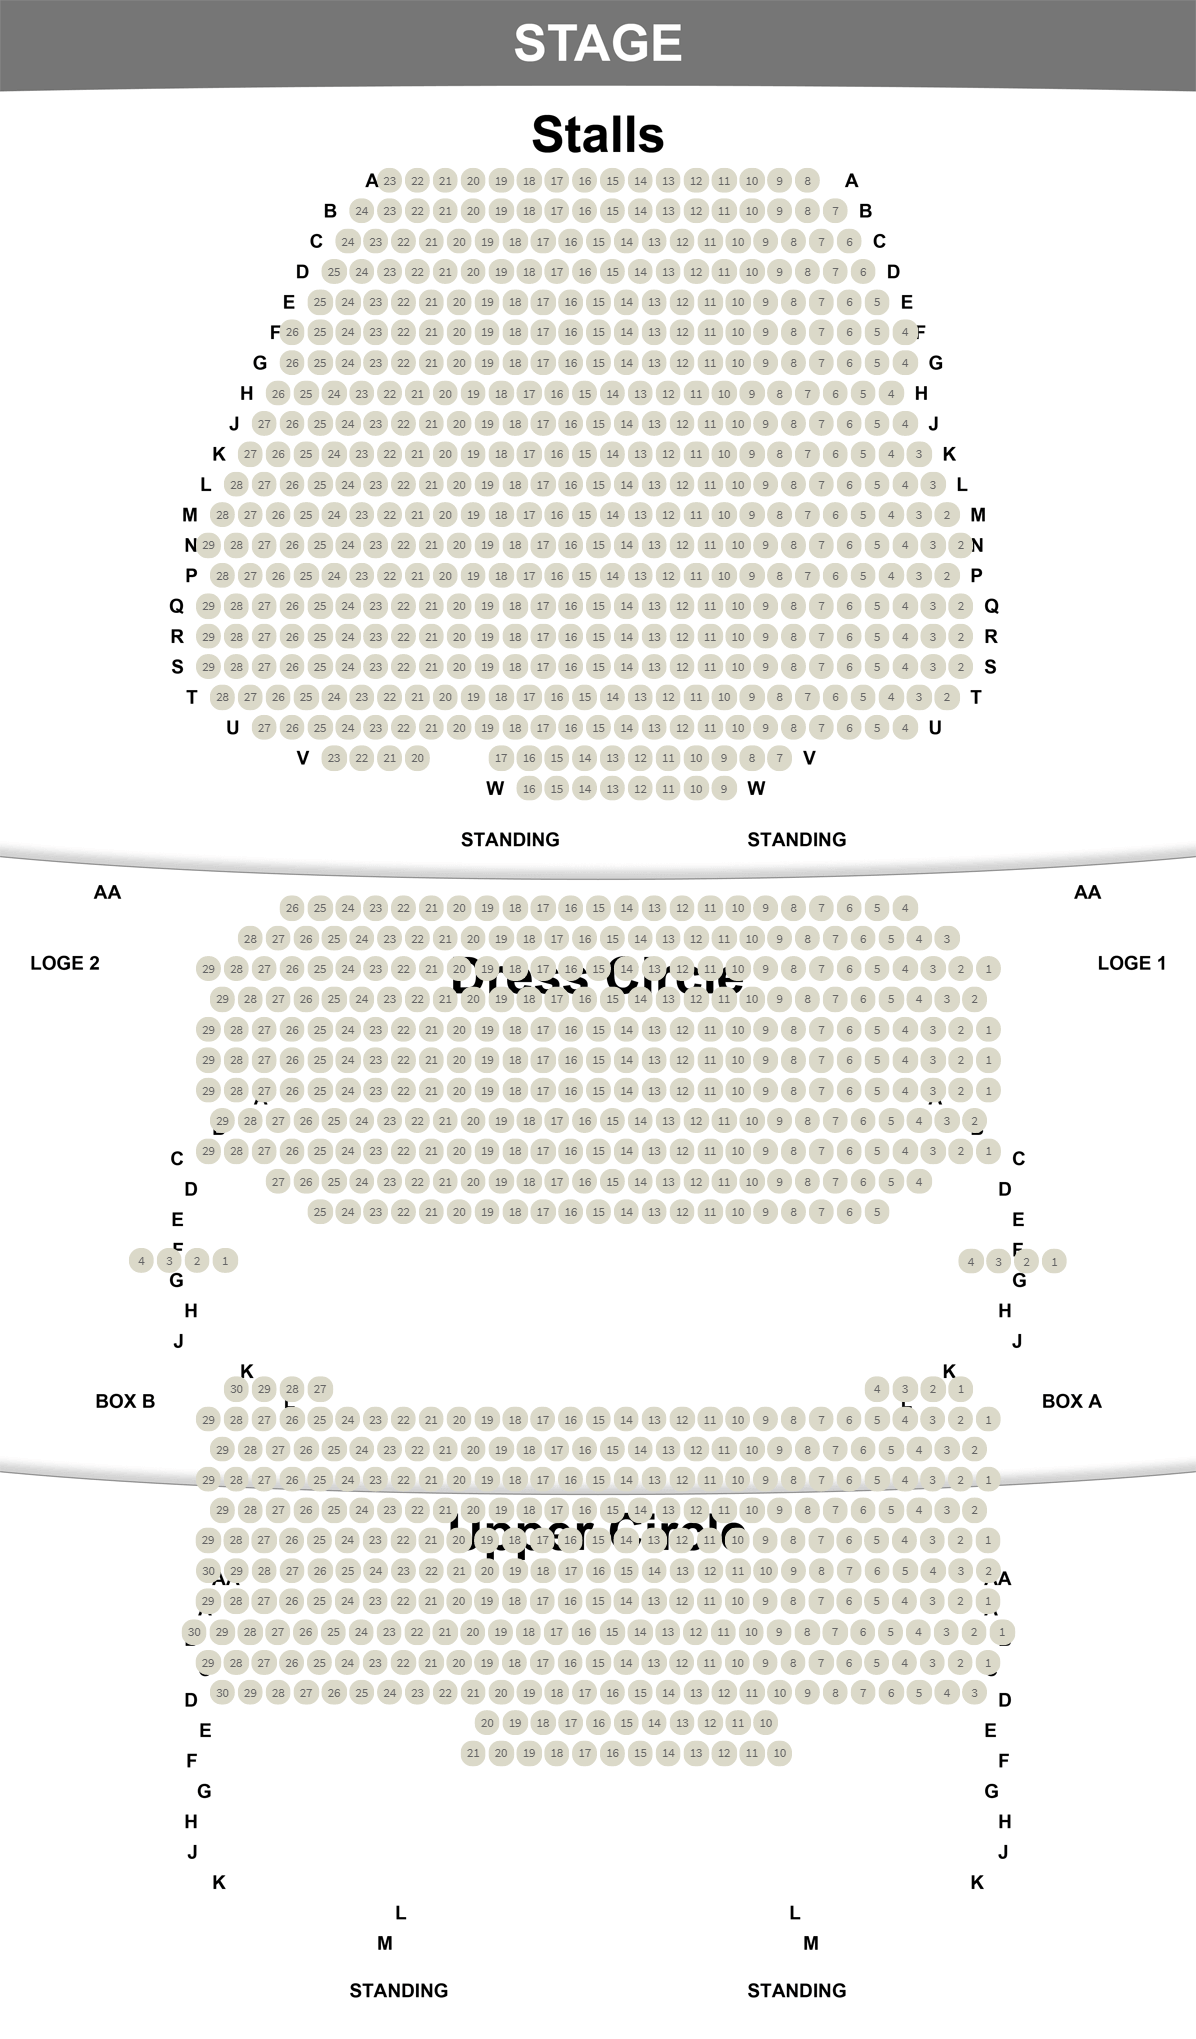 Plan de salle du Queen's Theatre